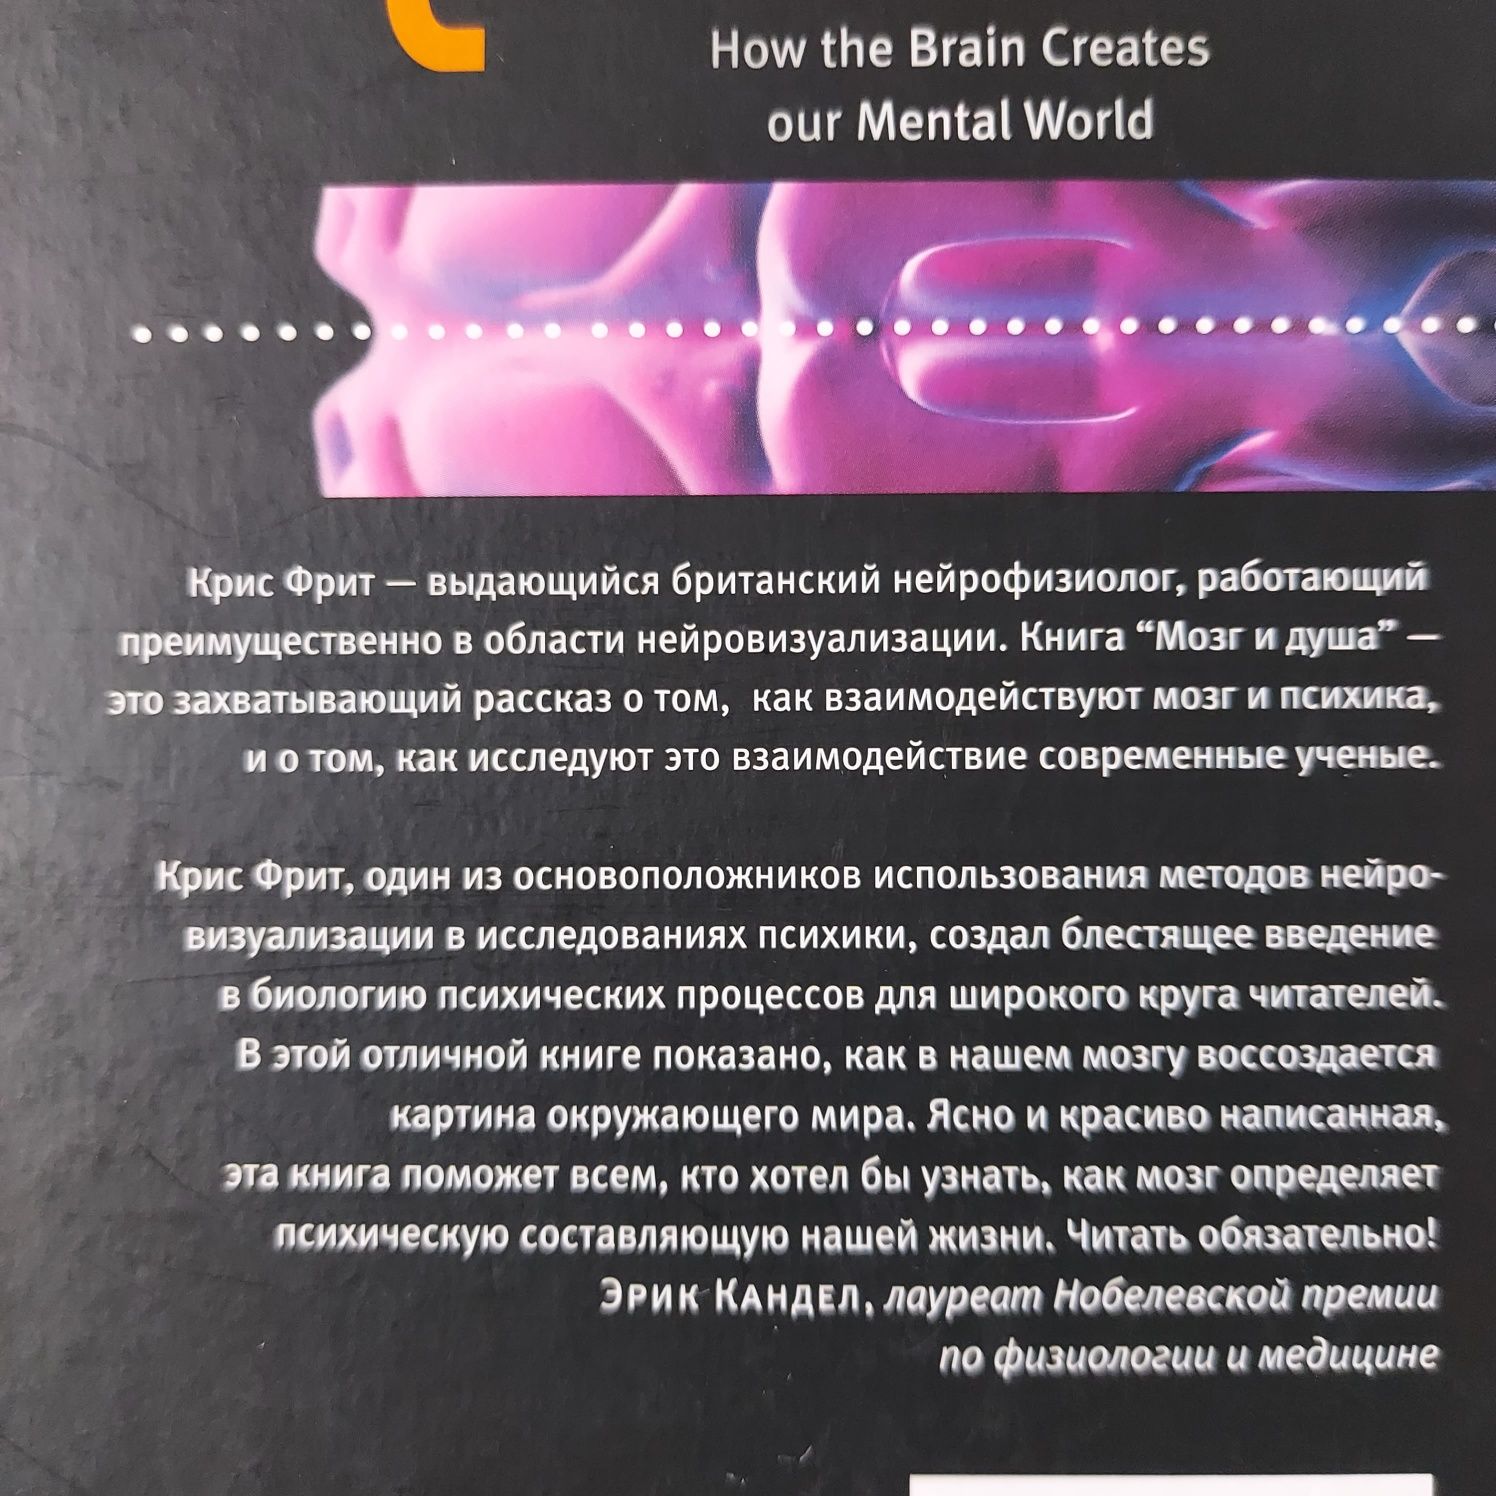 Книга "Мозг и душа"